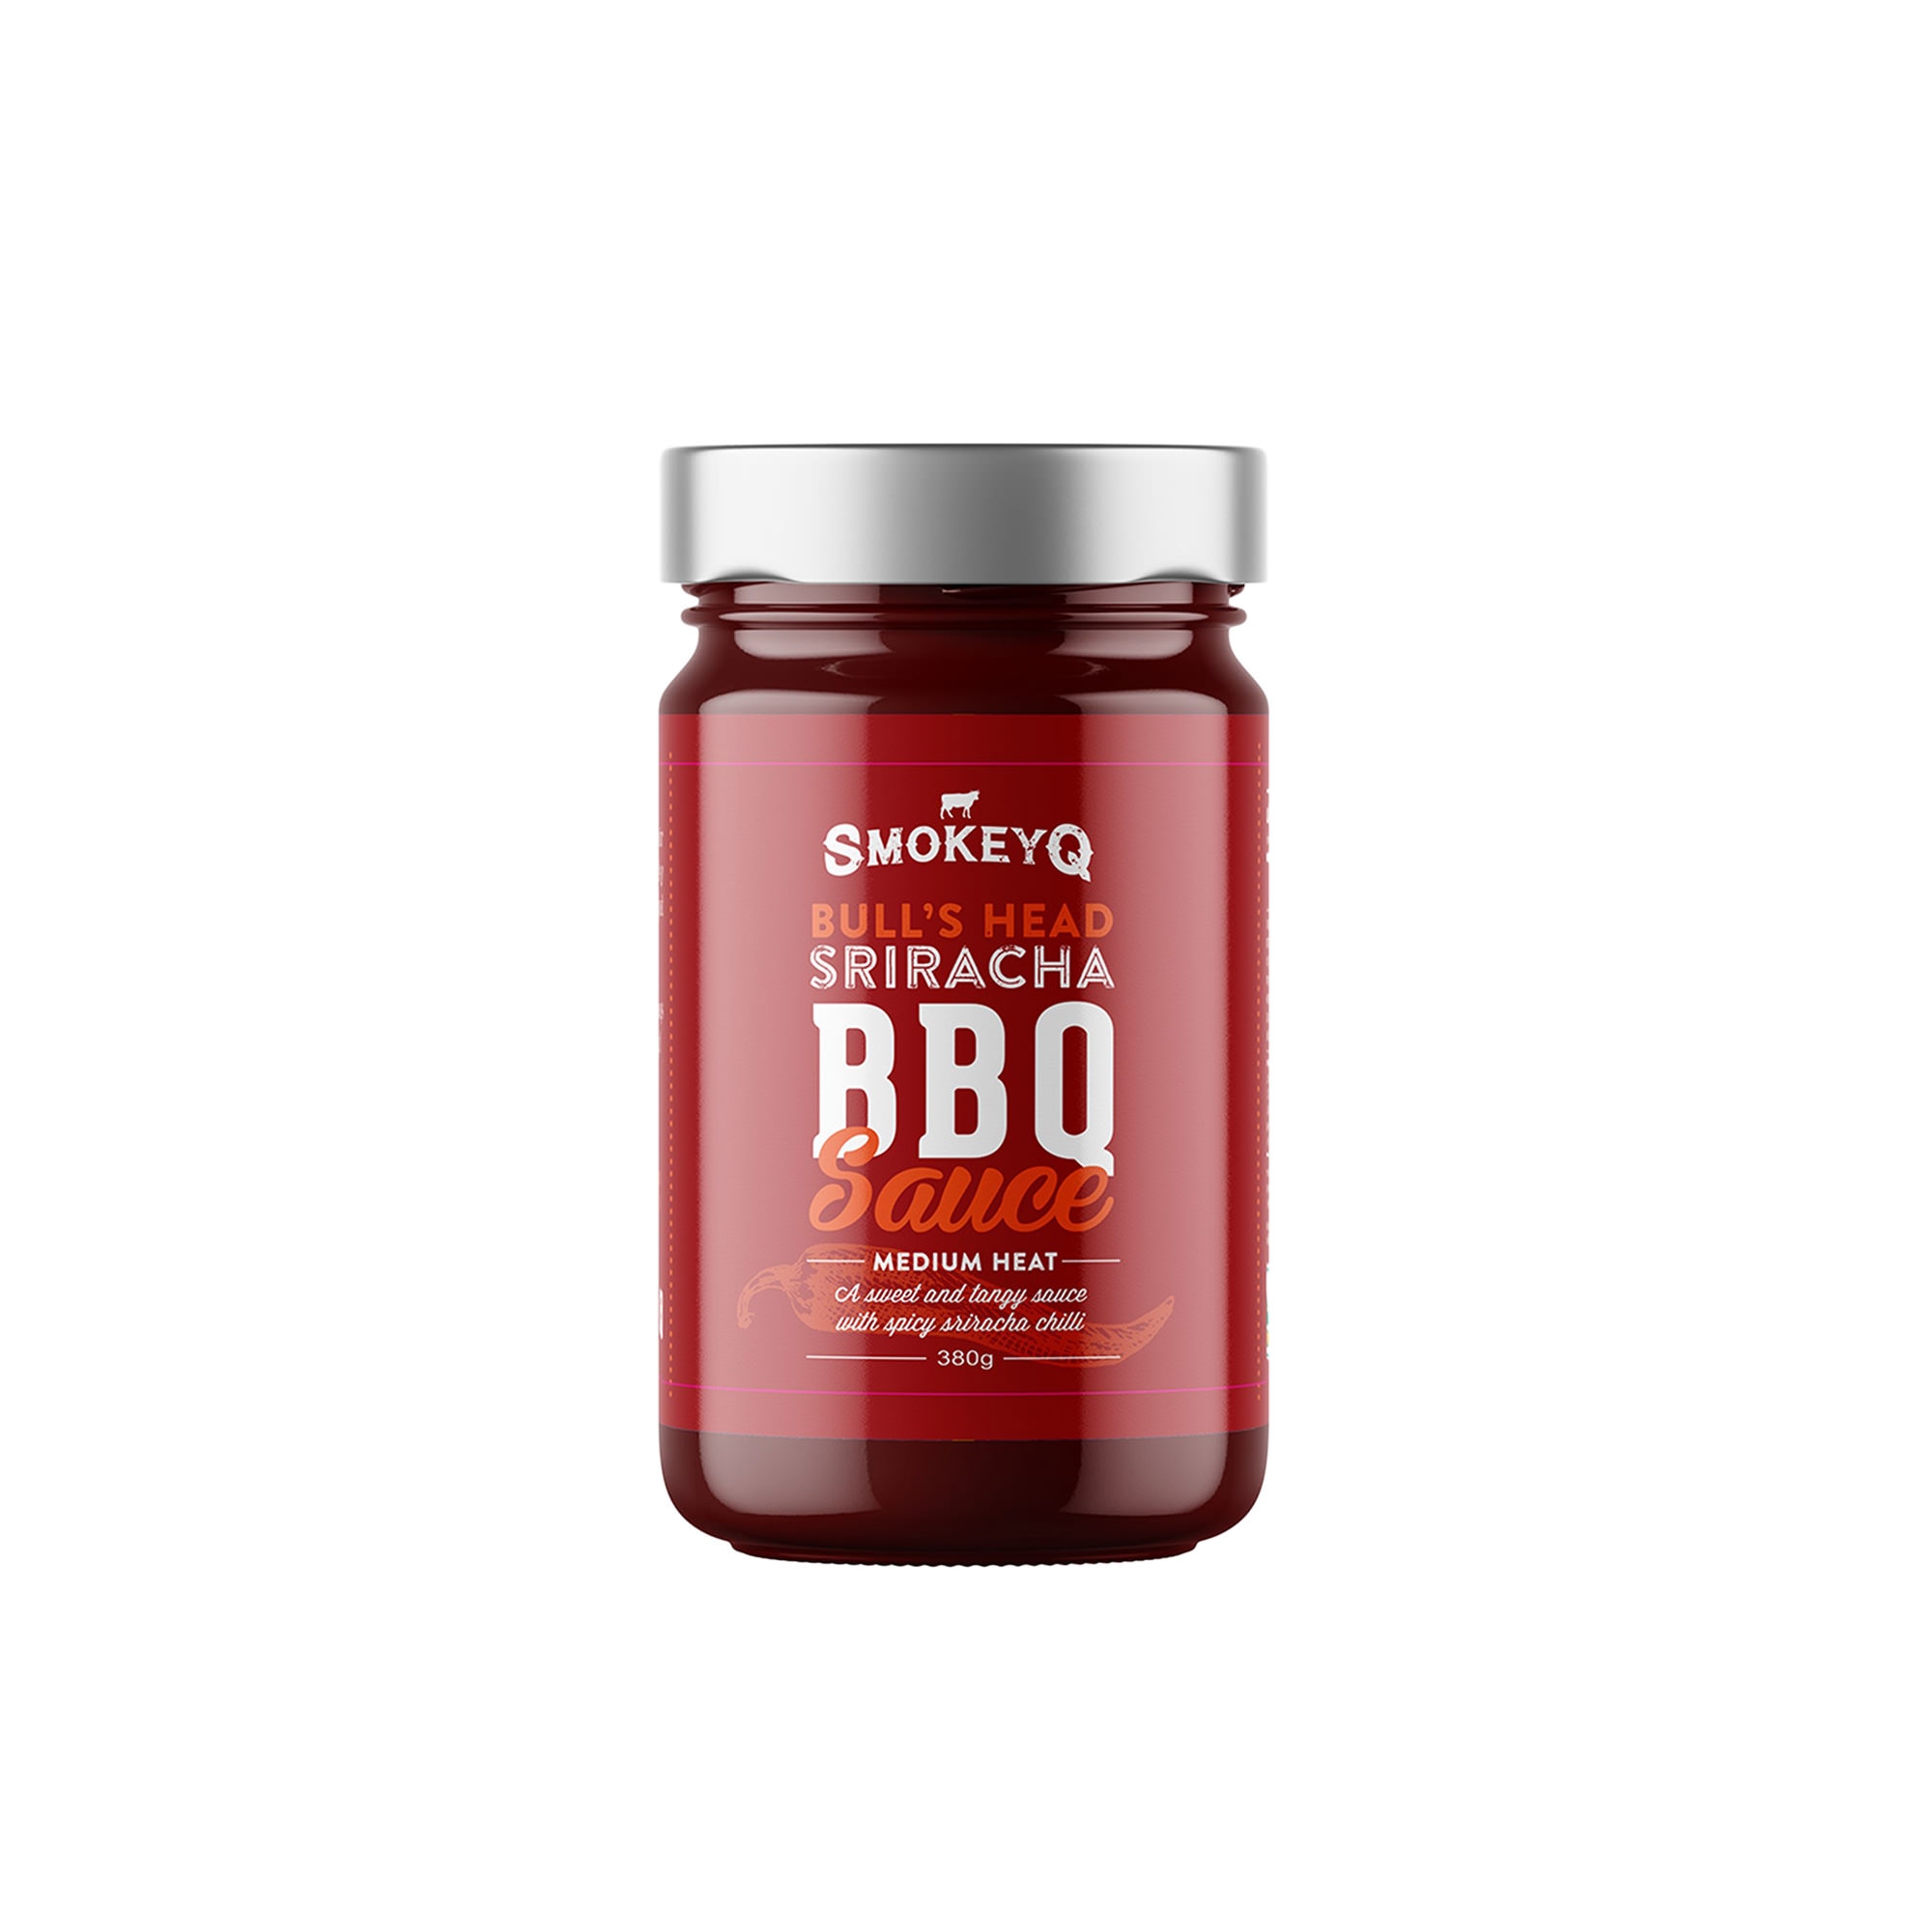 Smokey Q Sriracha BBQ Sauce 380g Image 1